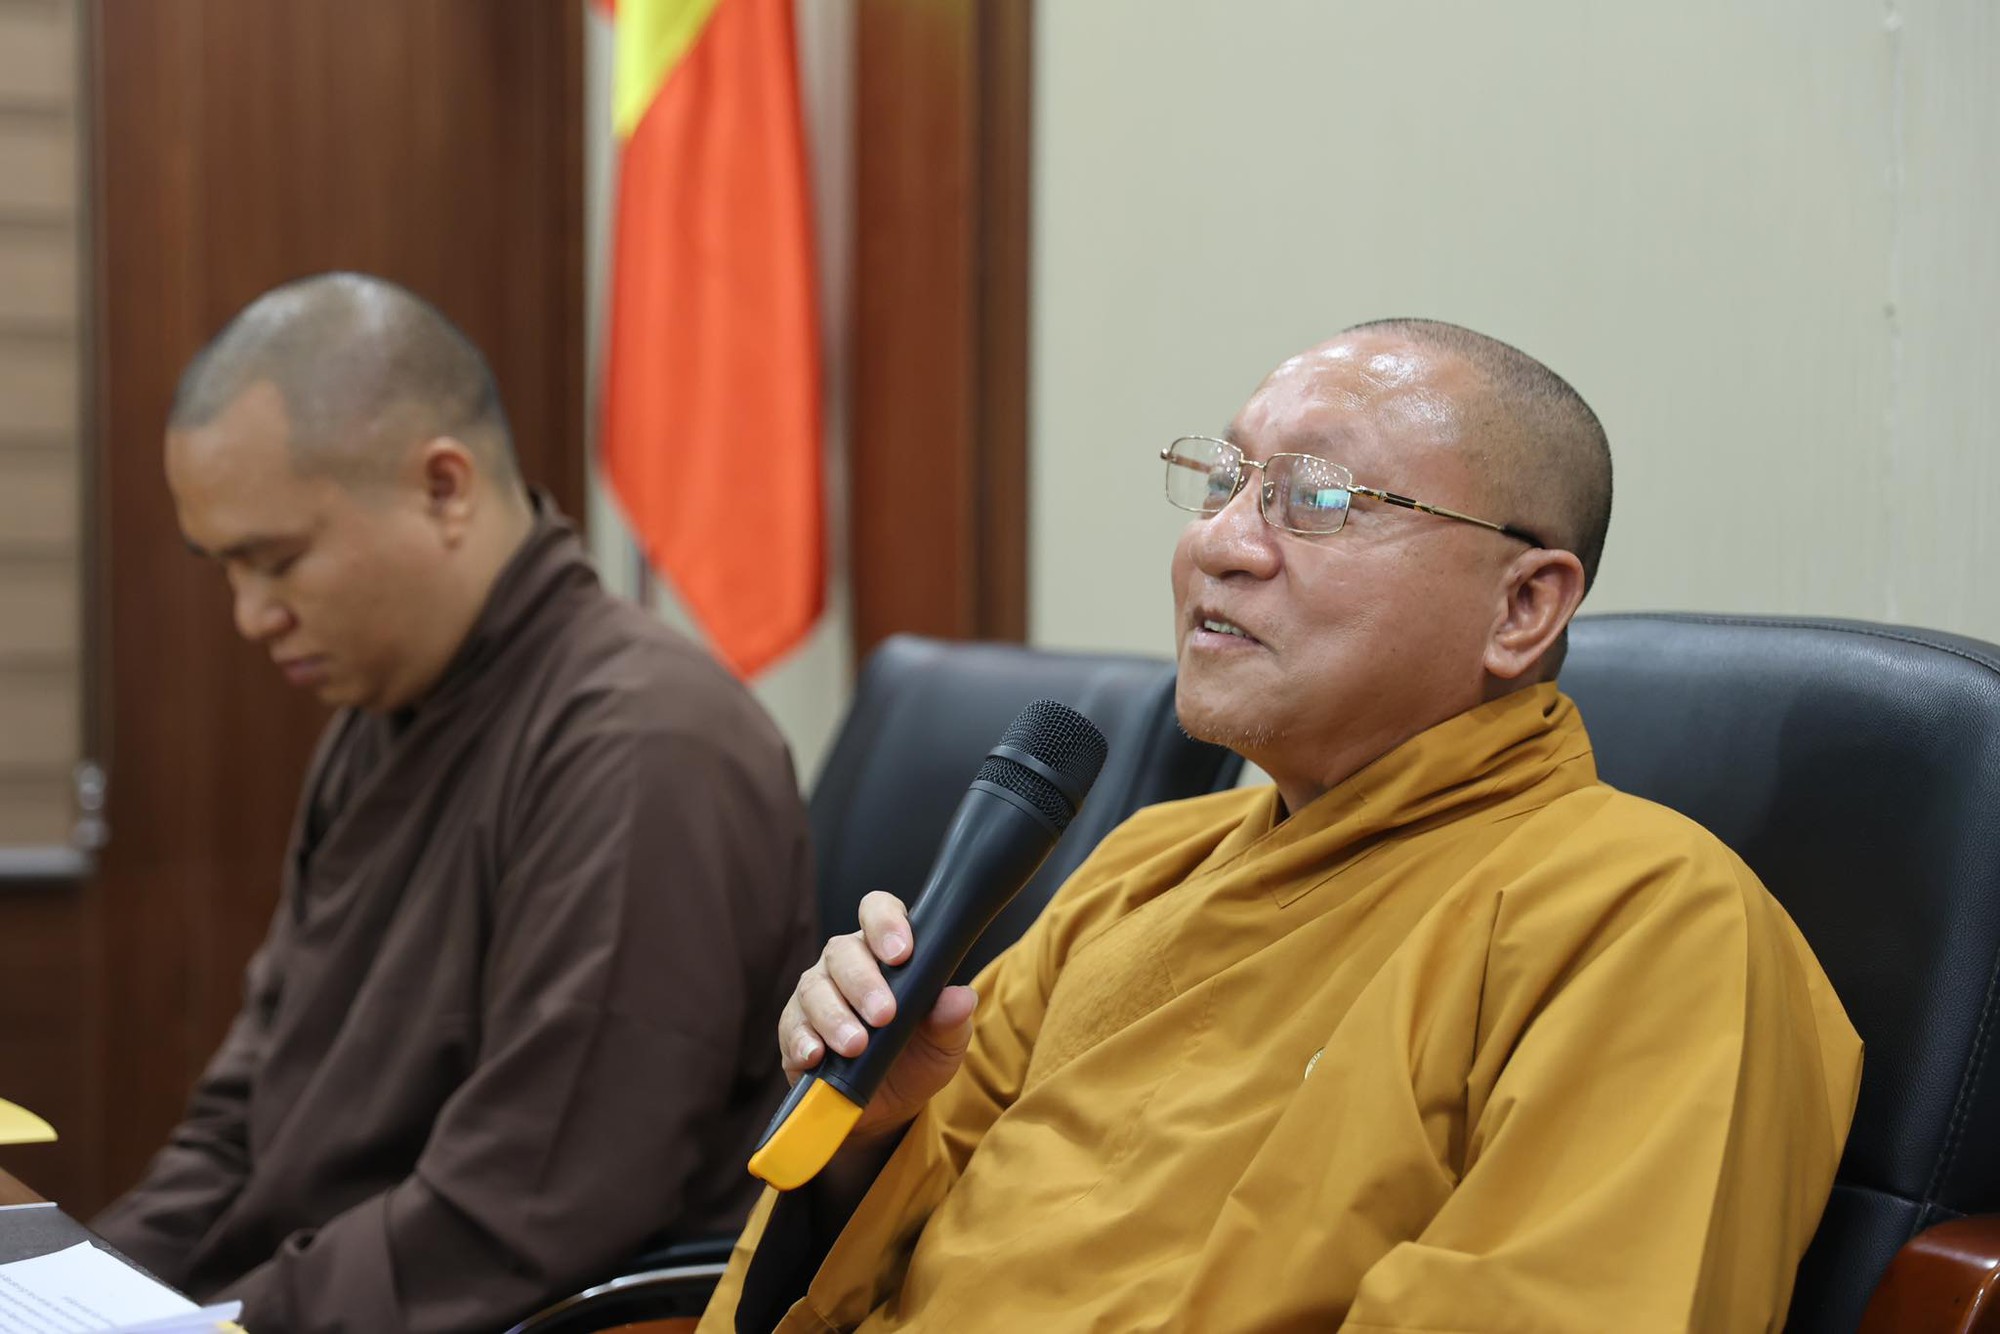 Kể câu chuyện đi tu bất thành, Phật tử đến từ Huế đoạt giải Nhất cuộc thi “Đạo Phật trong trái tim tôi” - Ảnh 1.